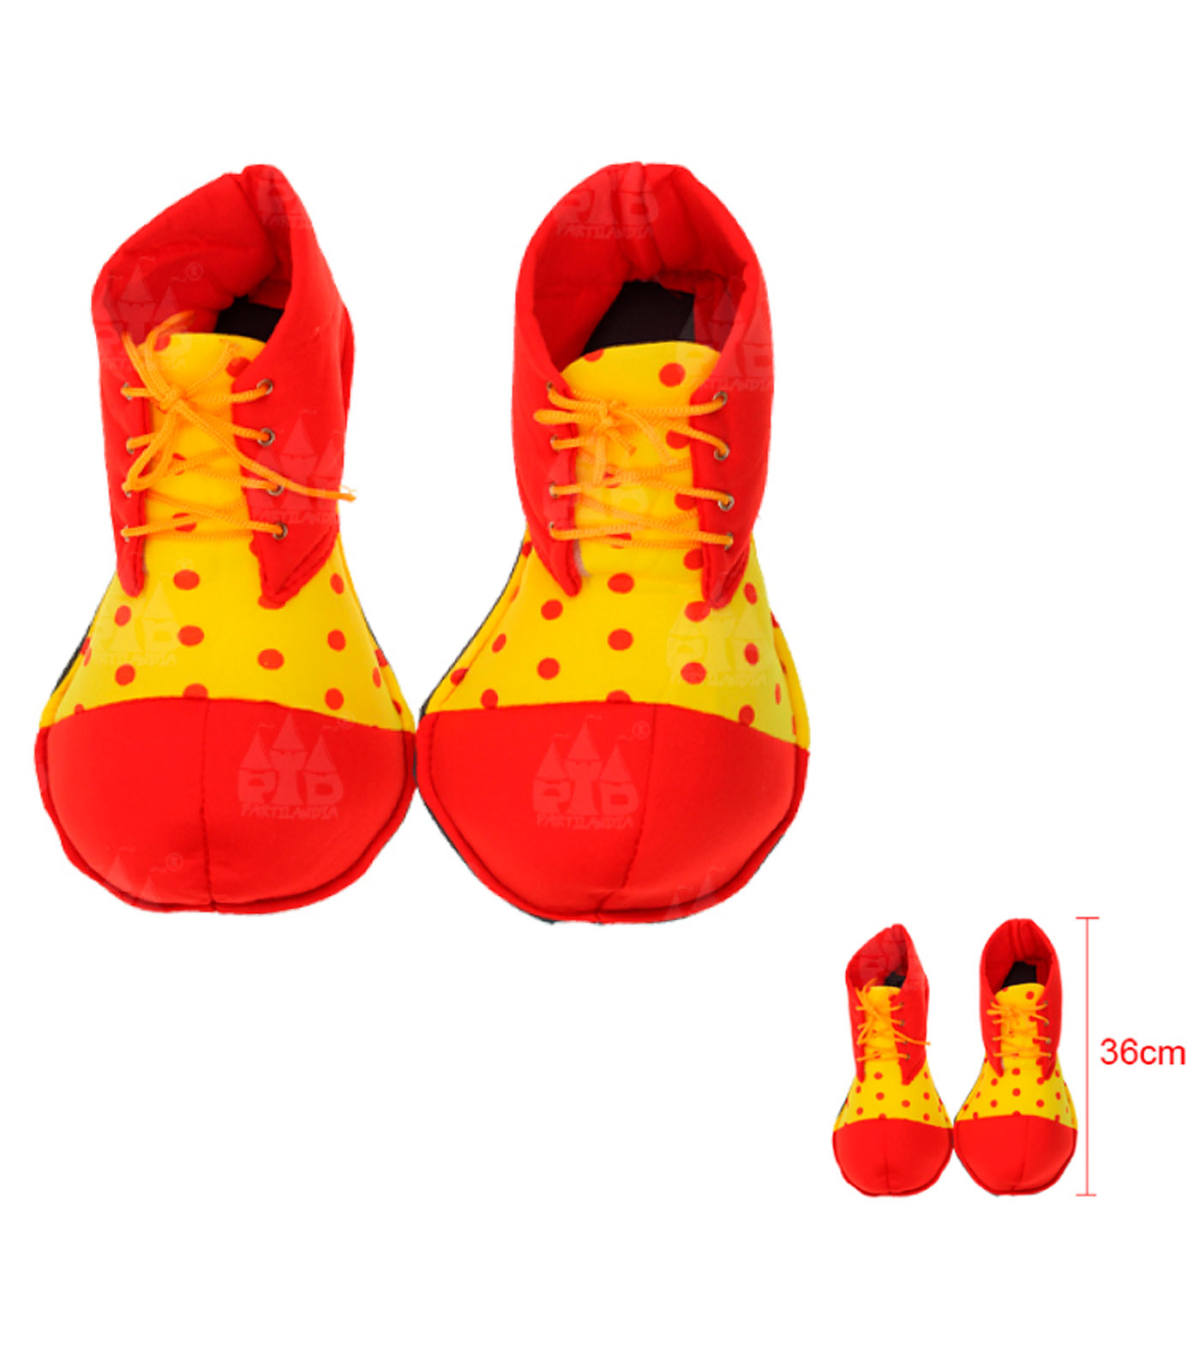  Ioffersuper - Zapatos de payaso grandes de arco iris,  divertidos kits de accesorios de circo para adultos, hombres y mujeres,  suministros de disfraces de Halloween, Navidad, regalos de fiesta de 